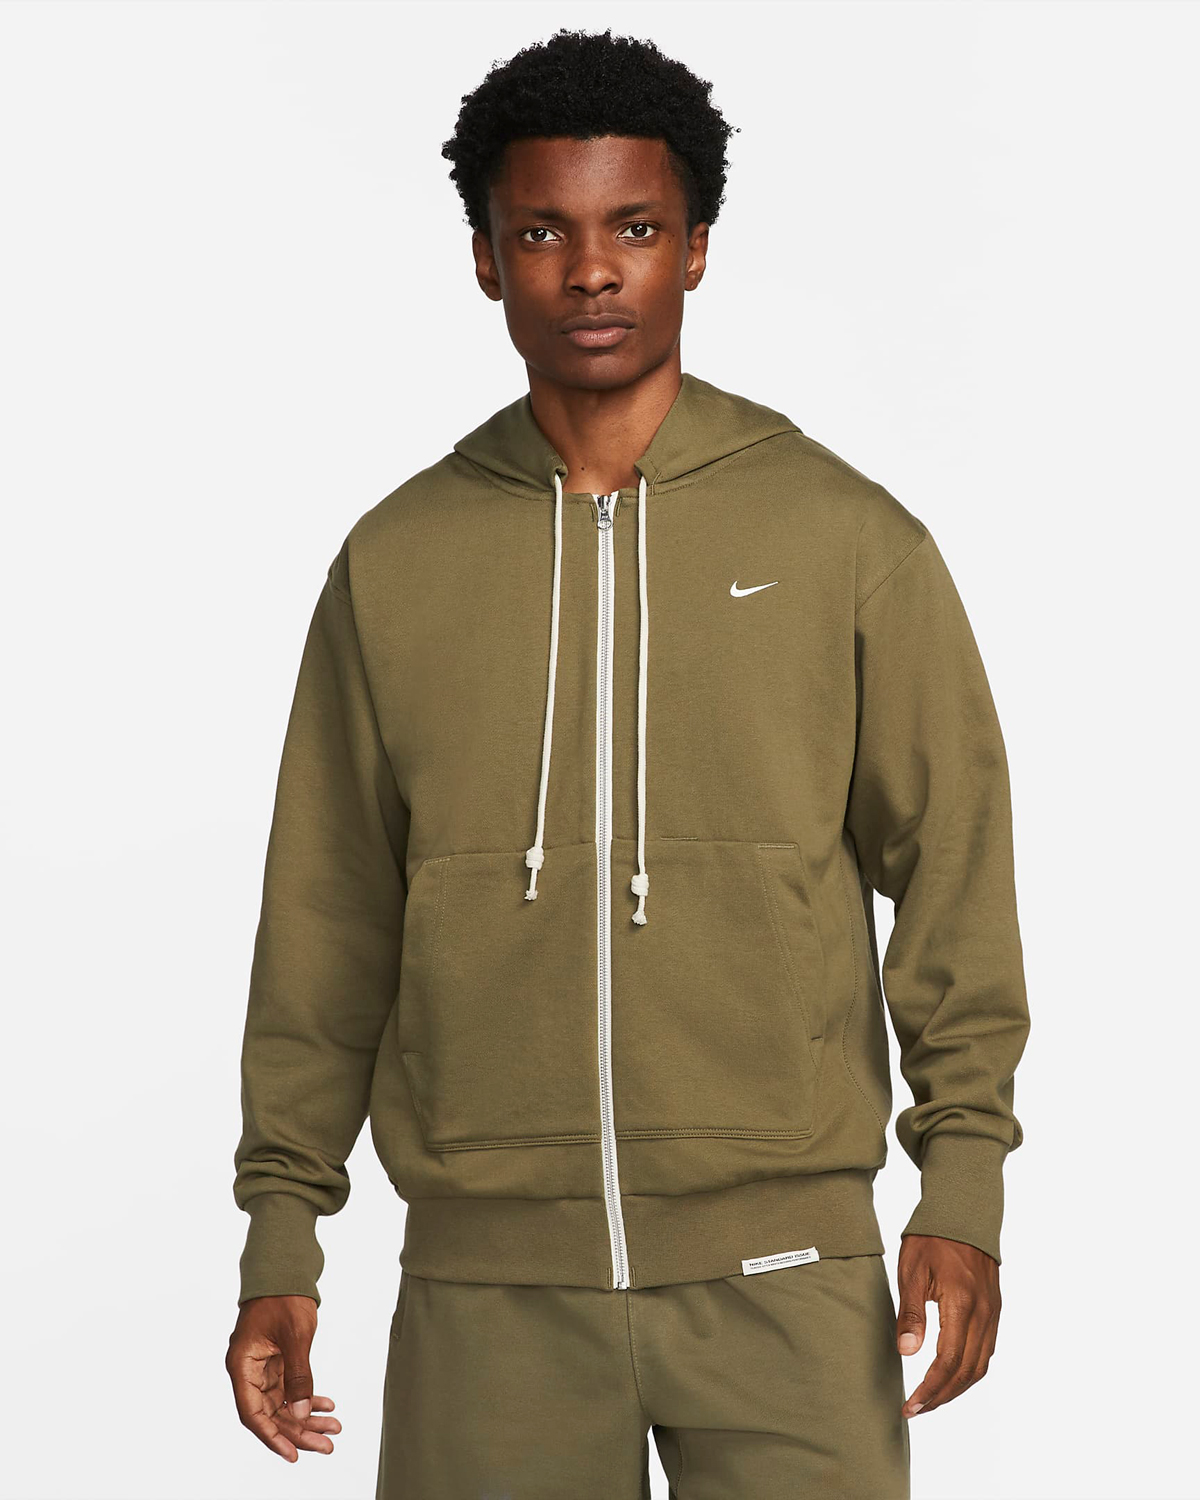 Nike-Standard-Issue-Zip-Hoodie-Medium-Olive